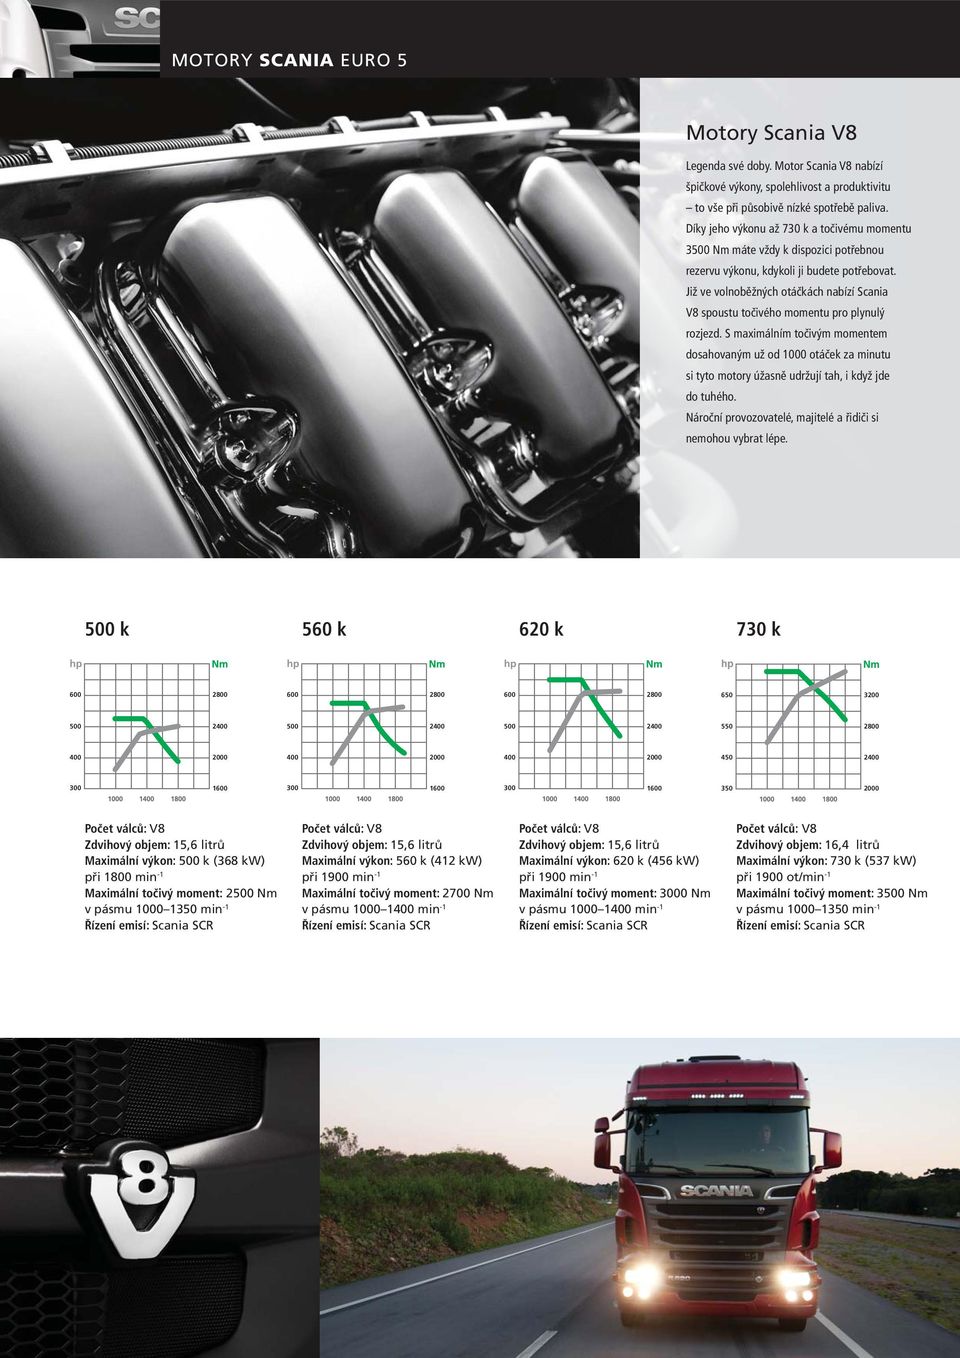 Již ve volnoběžných otáčkách nabízí Scania V8 spoustu točivého momentu pro plynulý rozjezd.